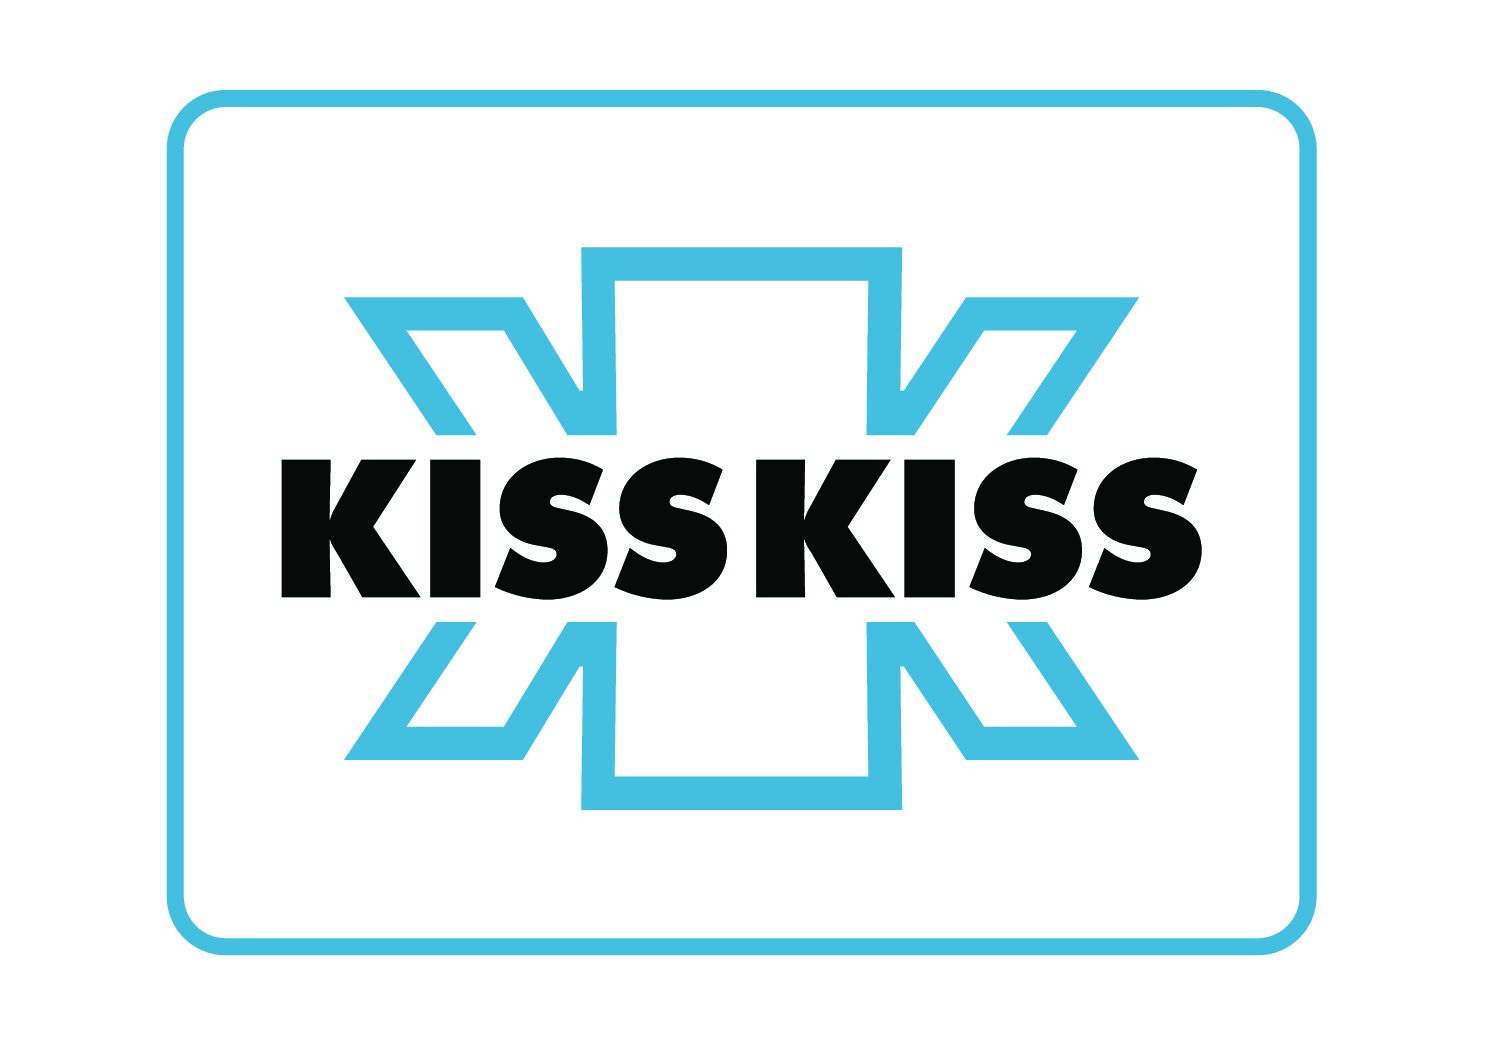 Radio Kiss Kiss stabile in un mercato in calo e nuovi record sui social media